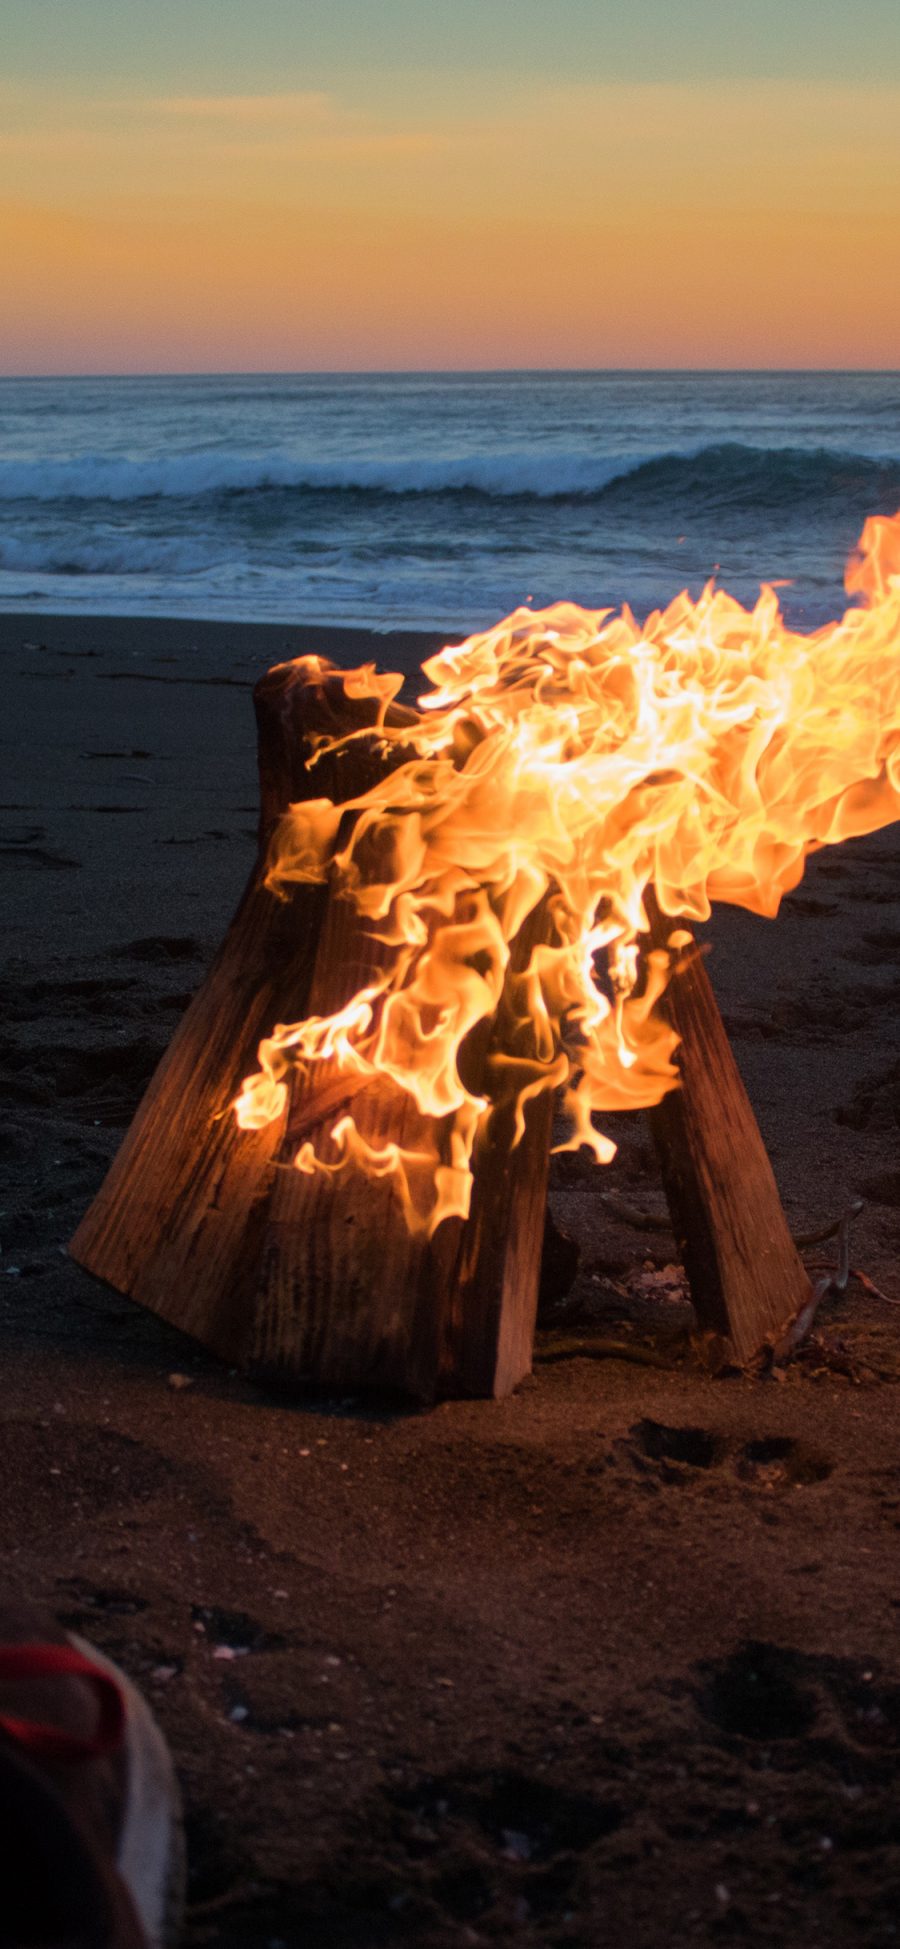 [2436×1125]海边 沙滩 露营 火堆 燃烧 苹果手机壁纸图片